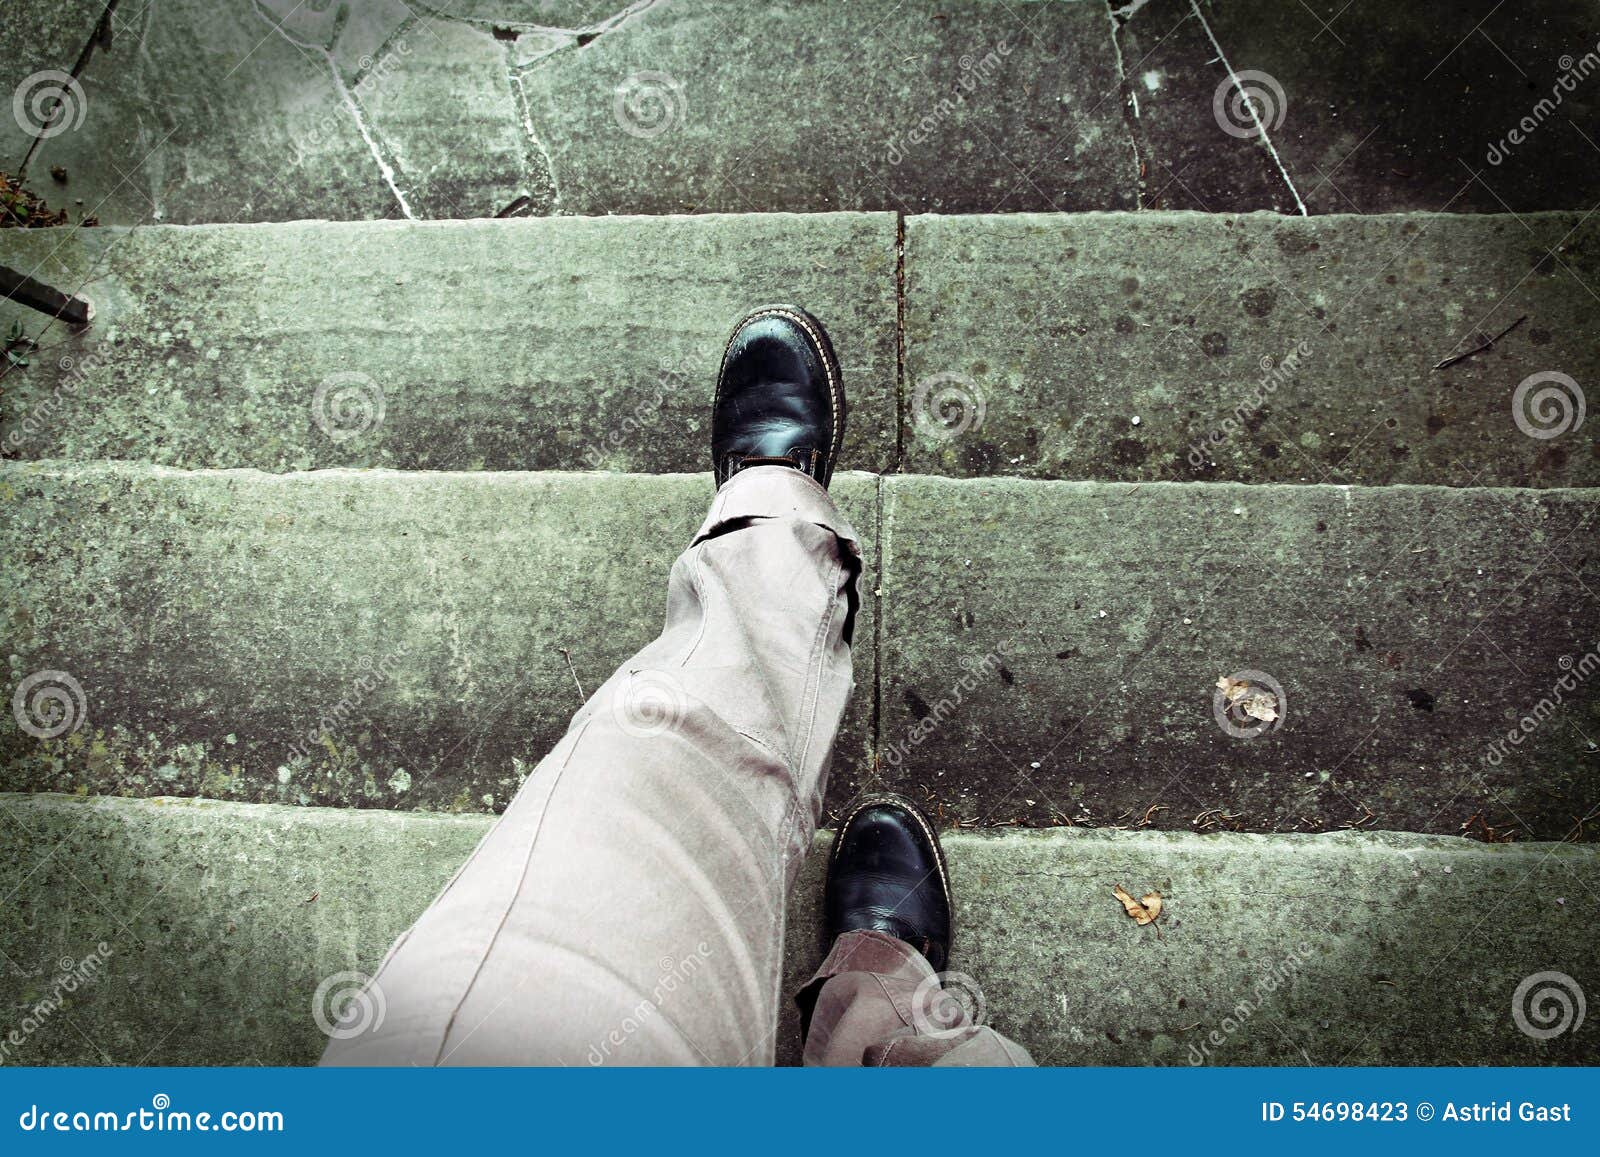 vertigo when climbing stairs